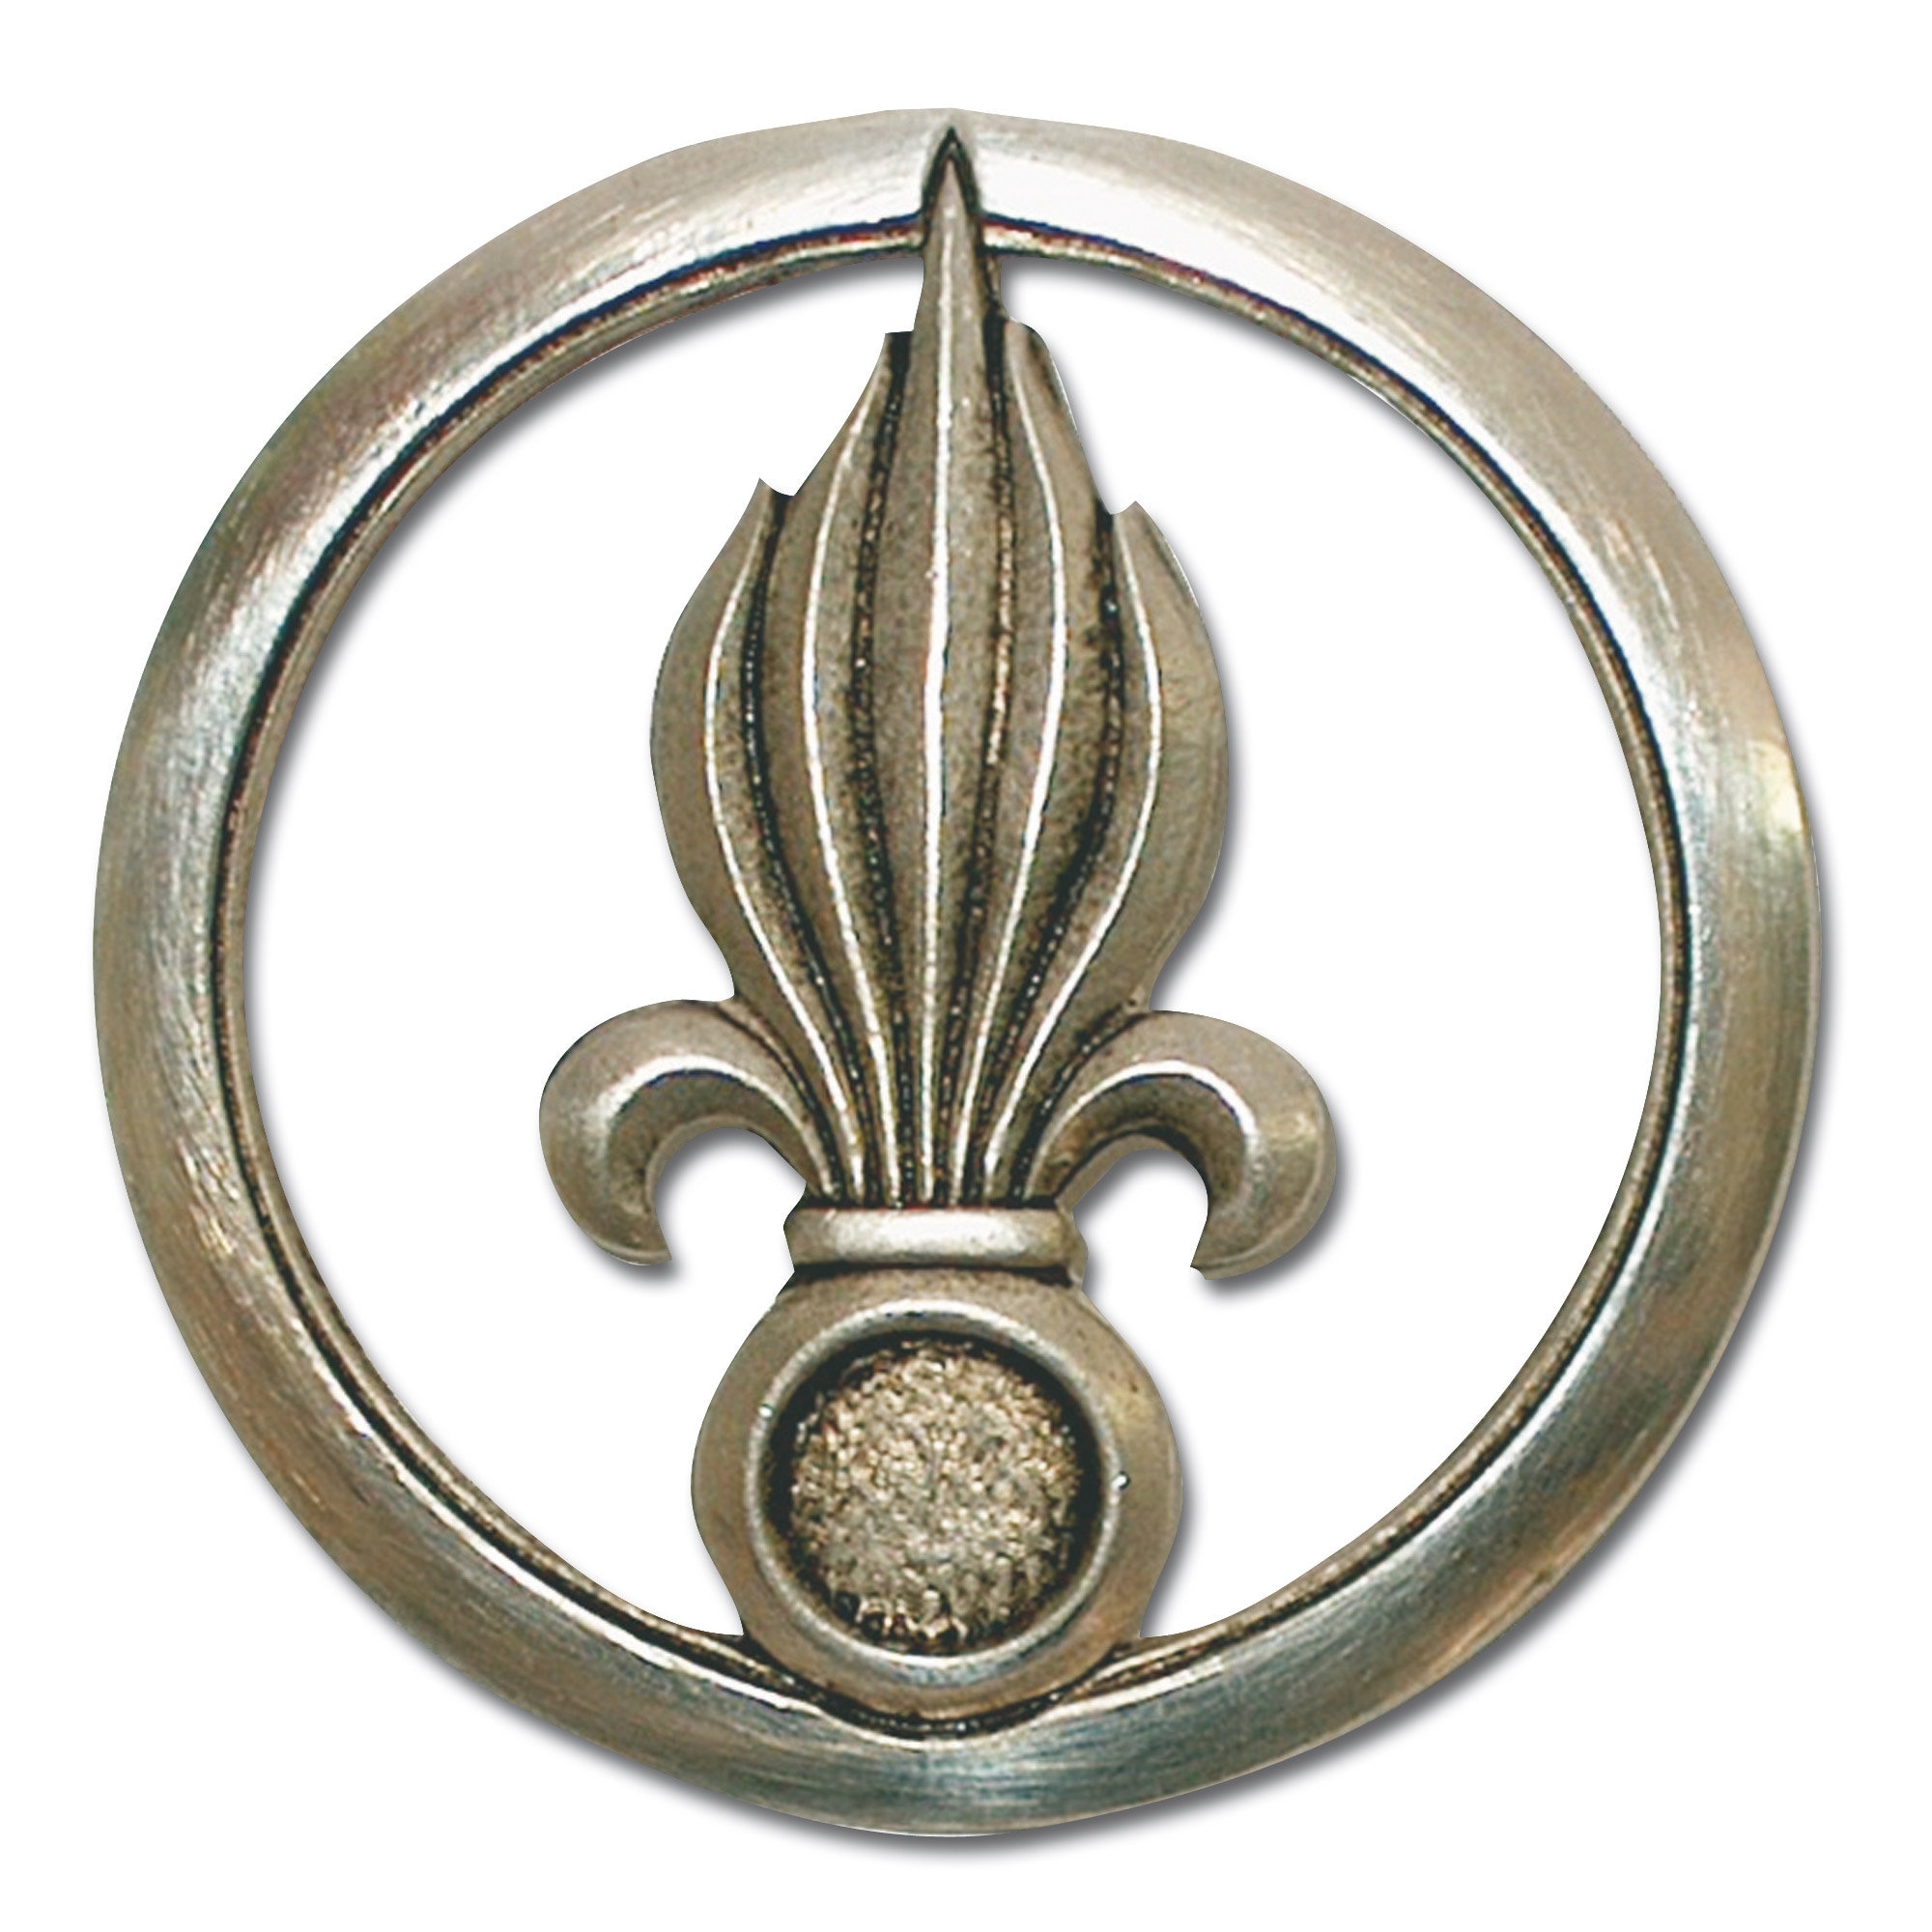 A3-082 Frankreich Fremden Legion Barettabzeichen Insignia for beret silver